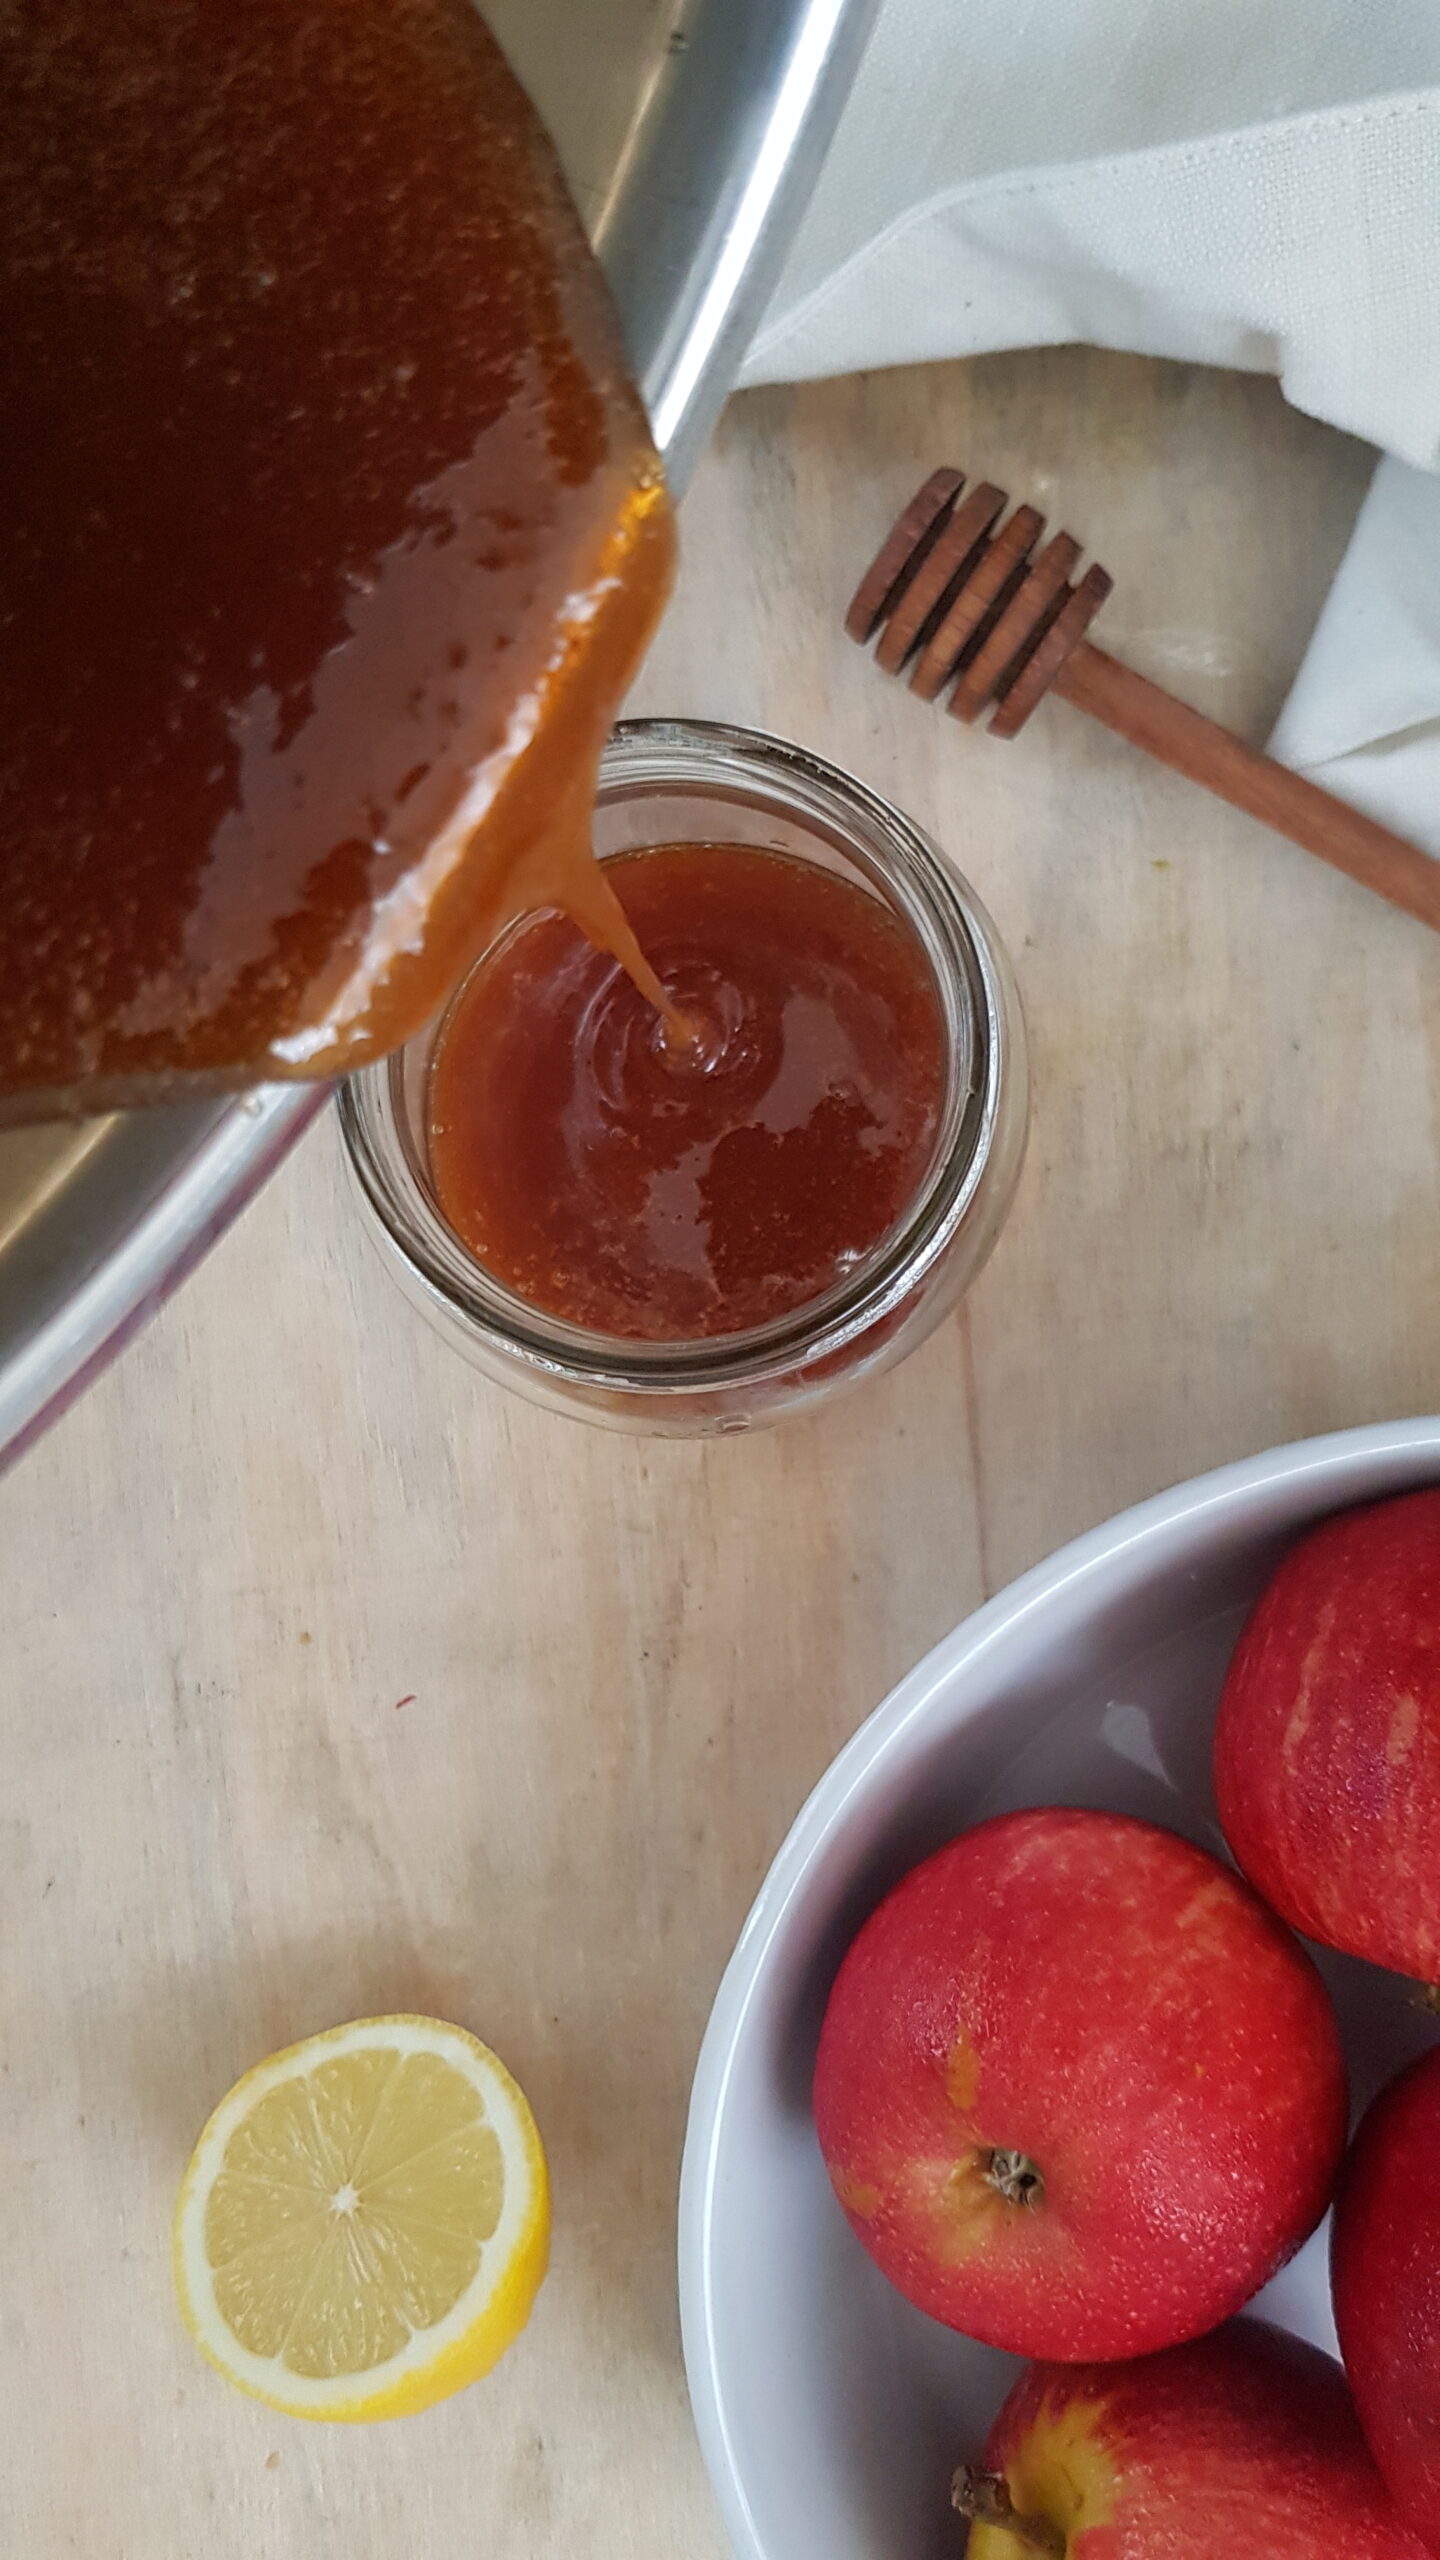 Home made vegan honey recipe